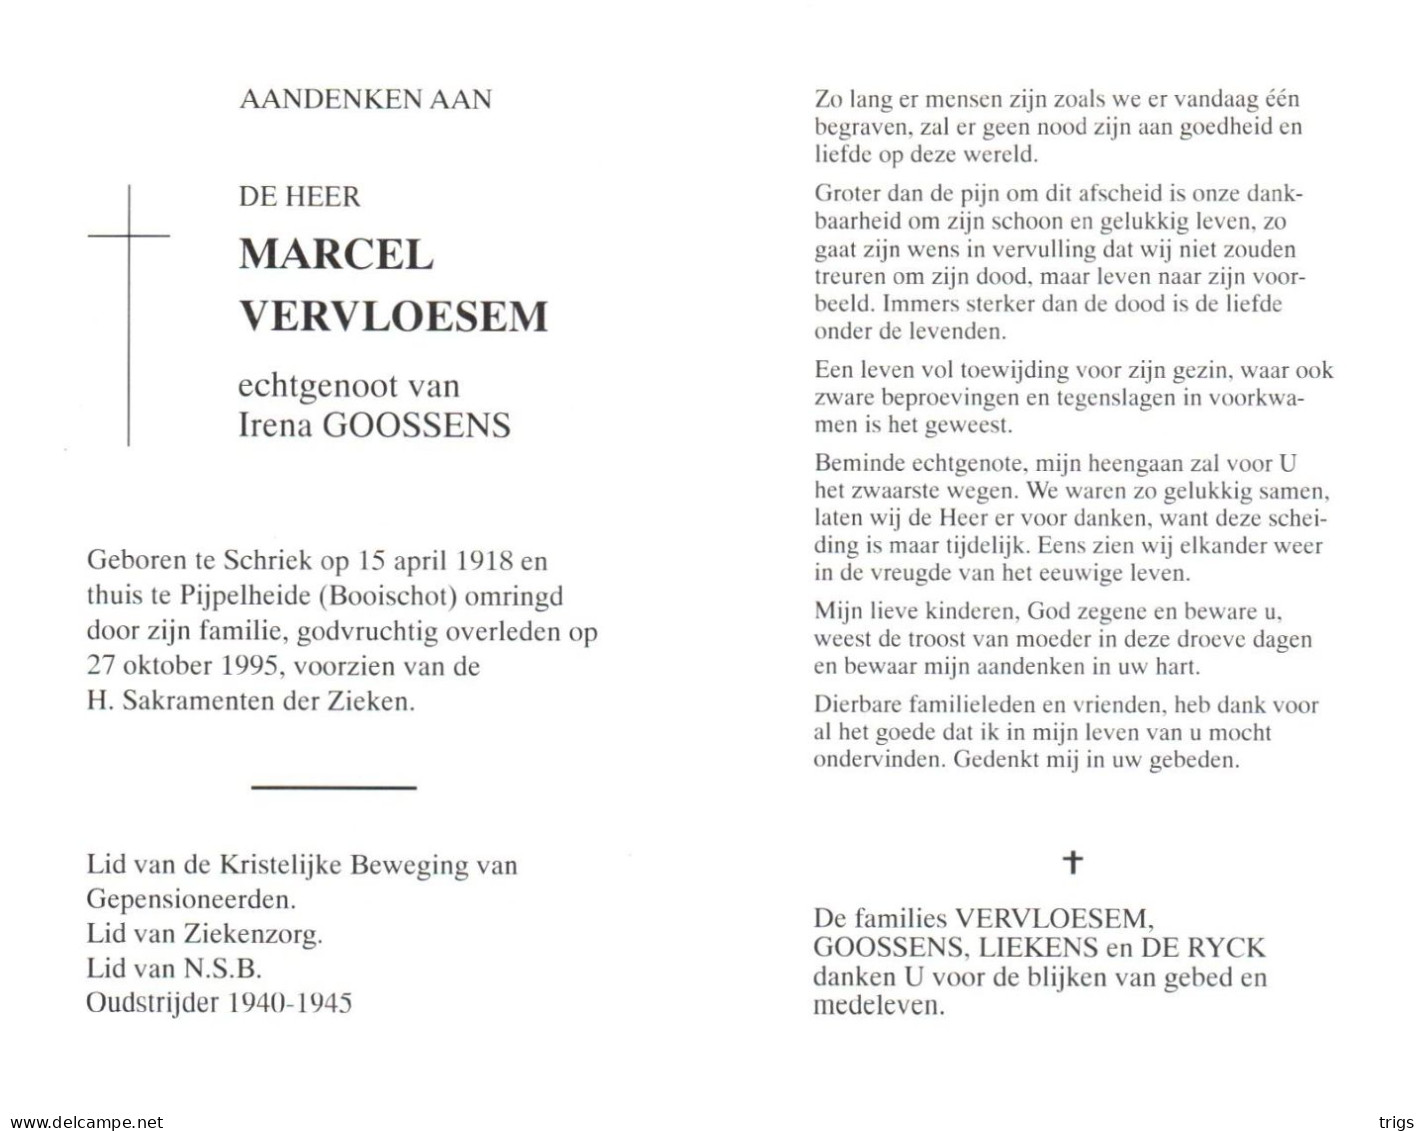 Marcel Vervloesem (1918-1995) - Devotion Images